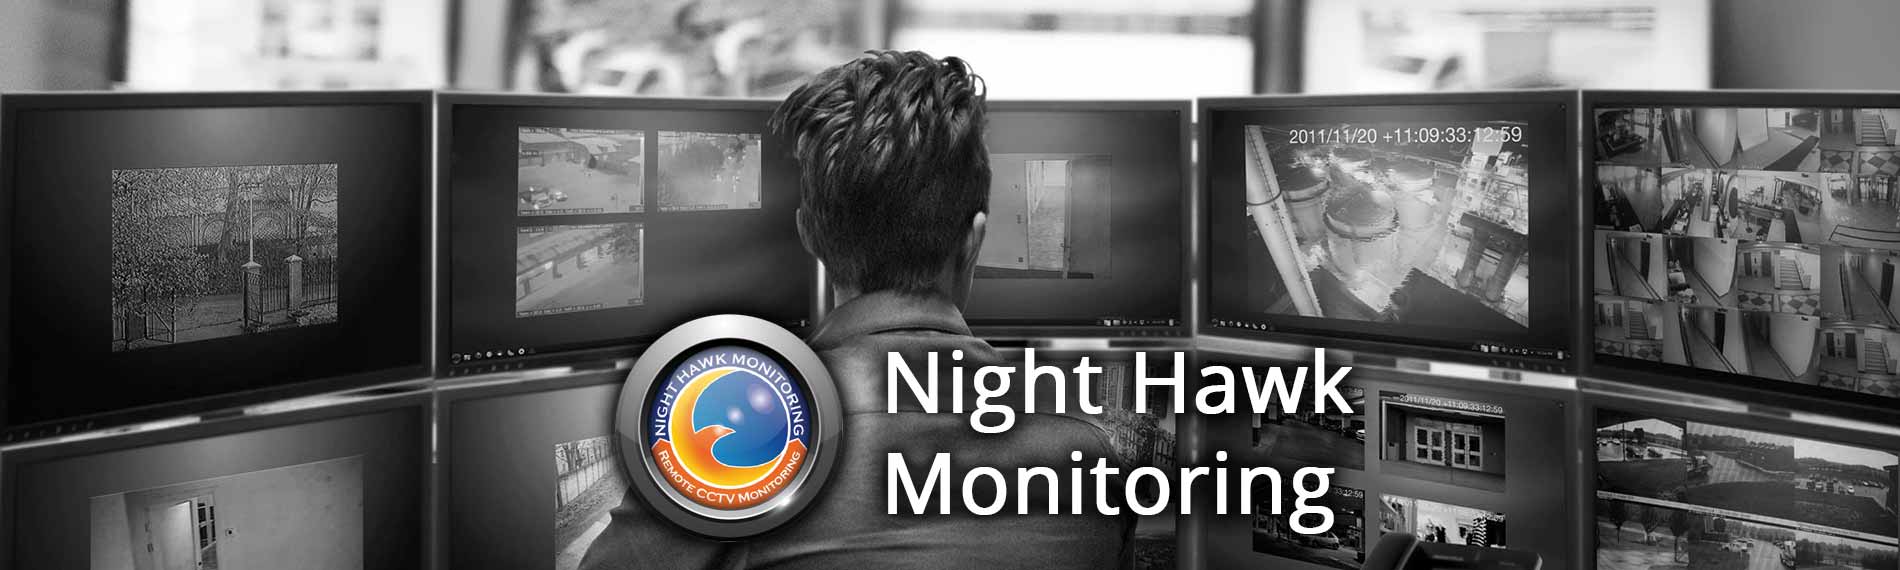 Remote Video Surveillance Cincinnati - Live Security Cameras Monitoring Cincinnati - Ohio